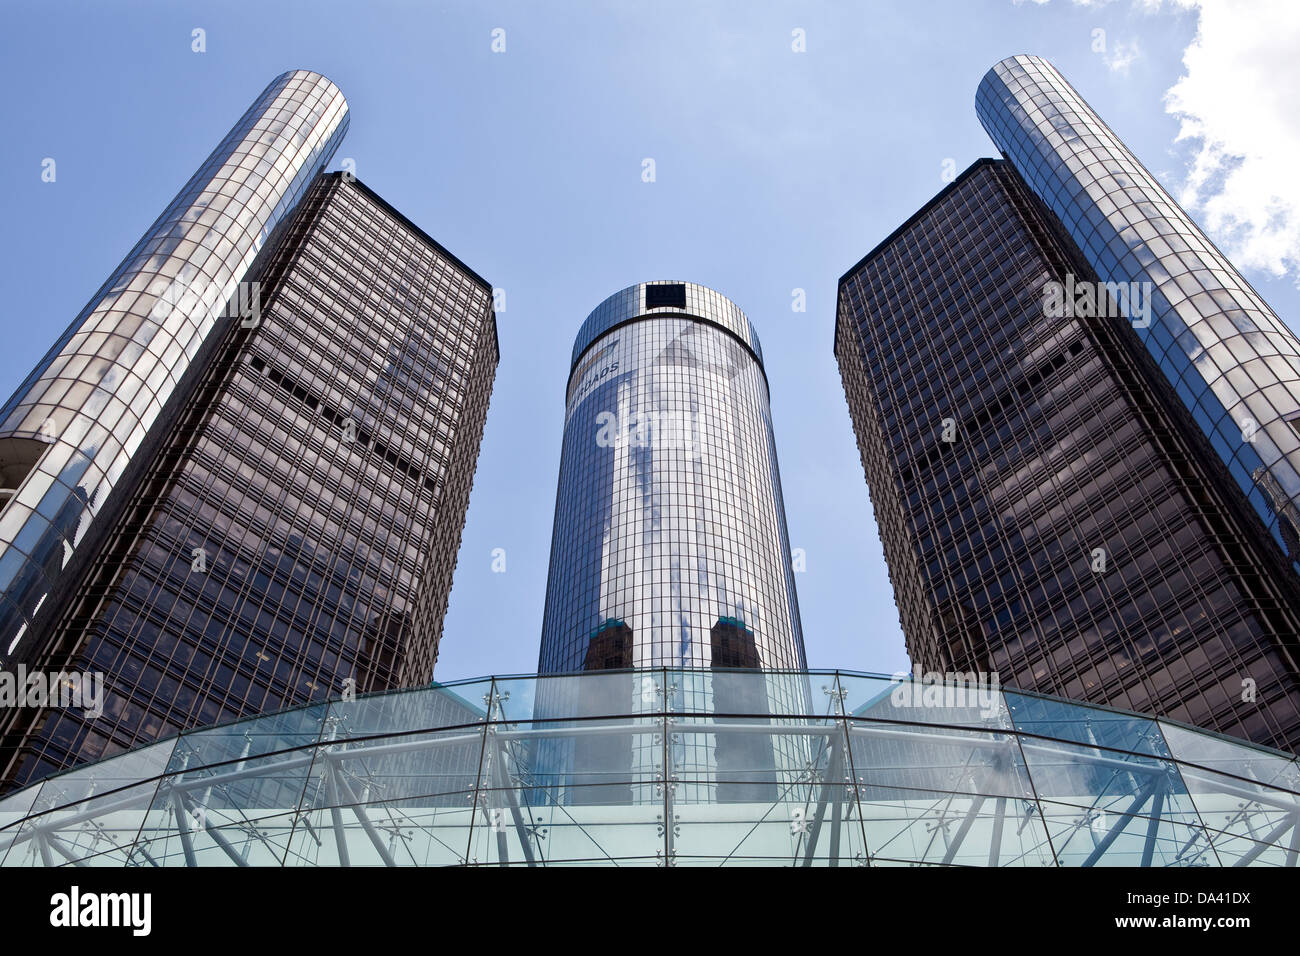 General Motors Unternehmenszentrale ist in Detroit Renaissance Center gesehen. Stockfoto